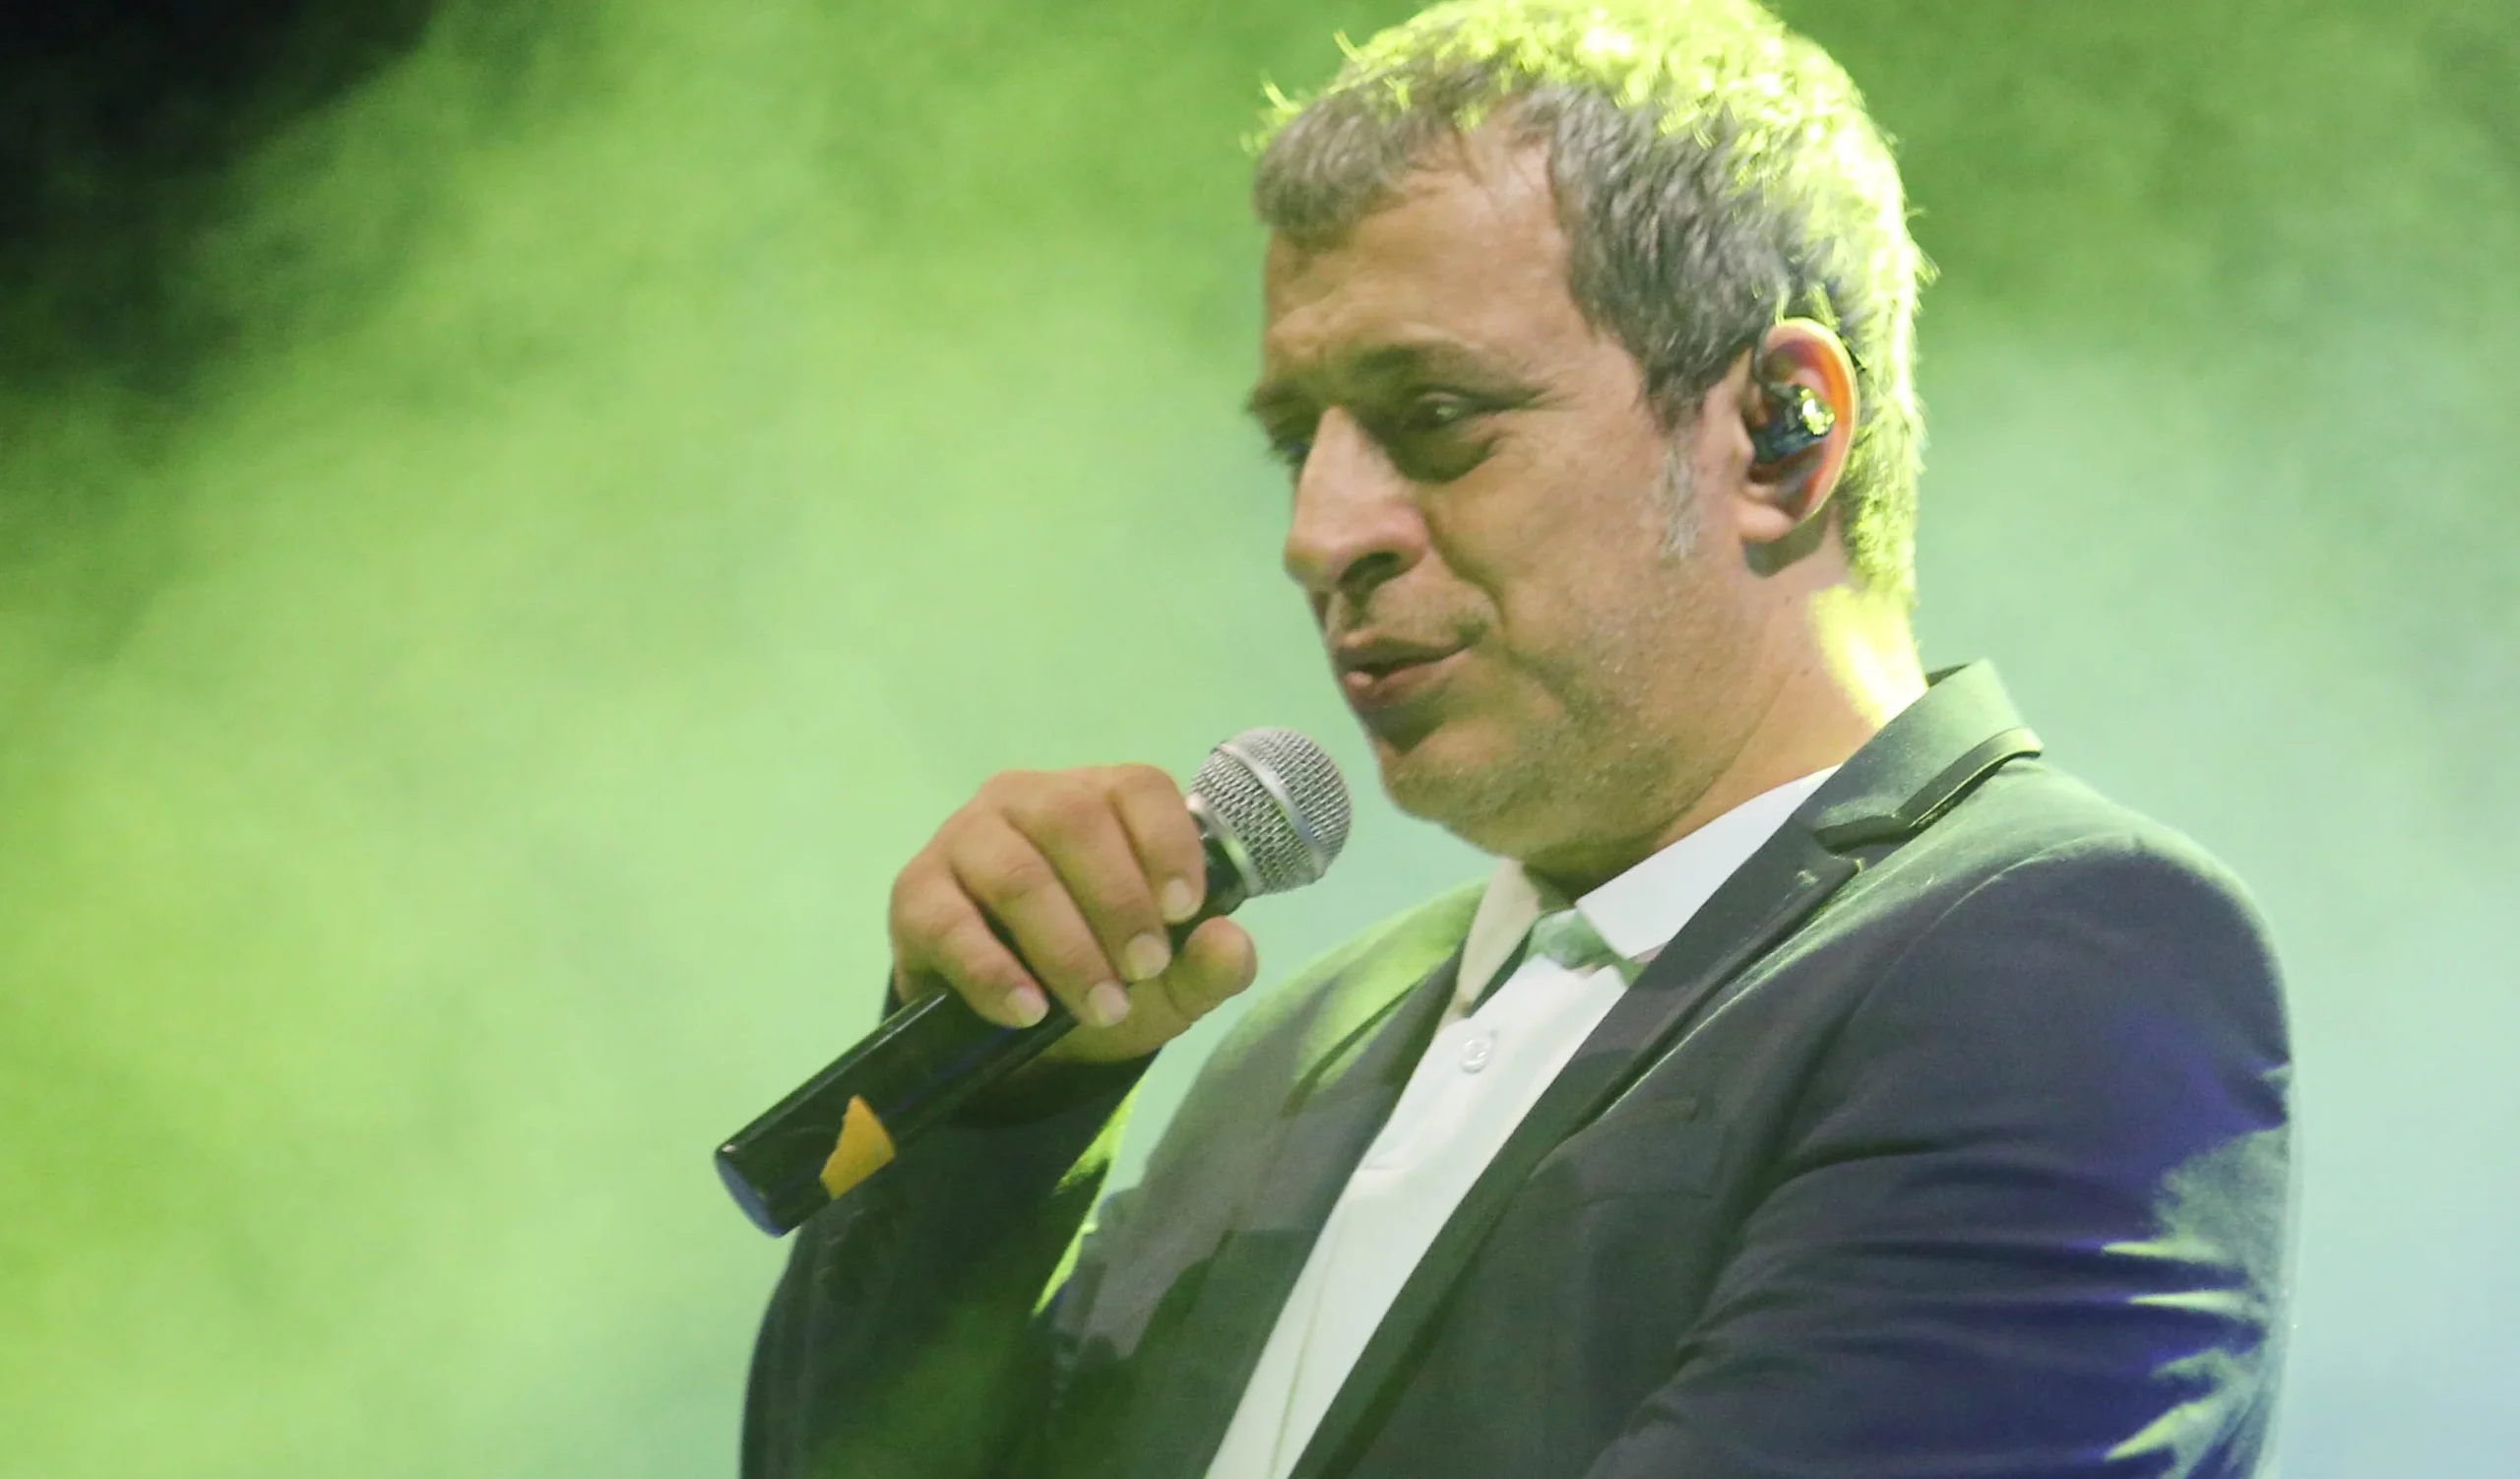 Η συνθέτρια Σ.Τζινιόλη απαγορεύει στον Θέμη Αδαμαντίδη να λέει τραγούδια της – Ποια μεγάλη επιτυχία του «κόβει»